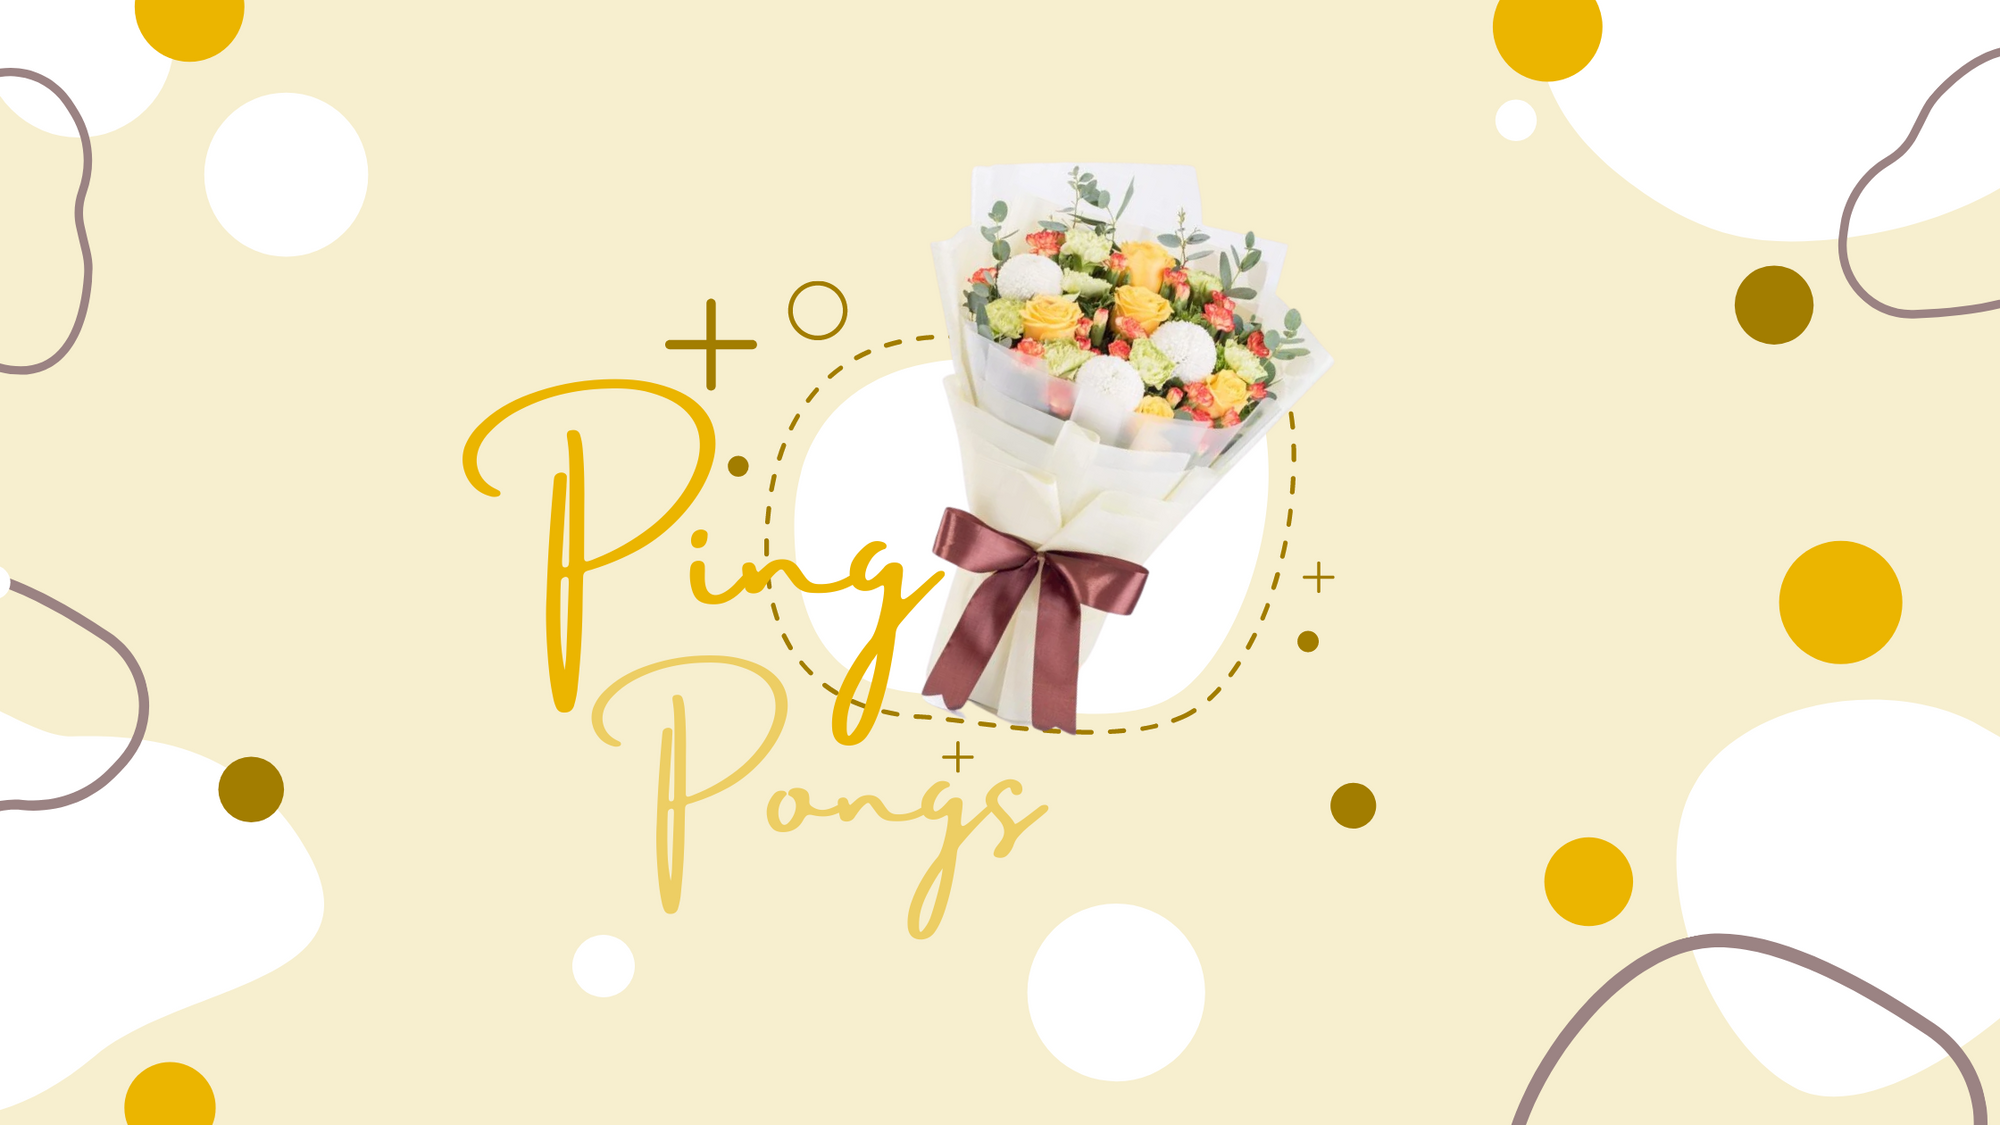 Ping Pong (Chrysanthemum) Flower Facts